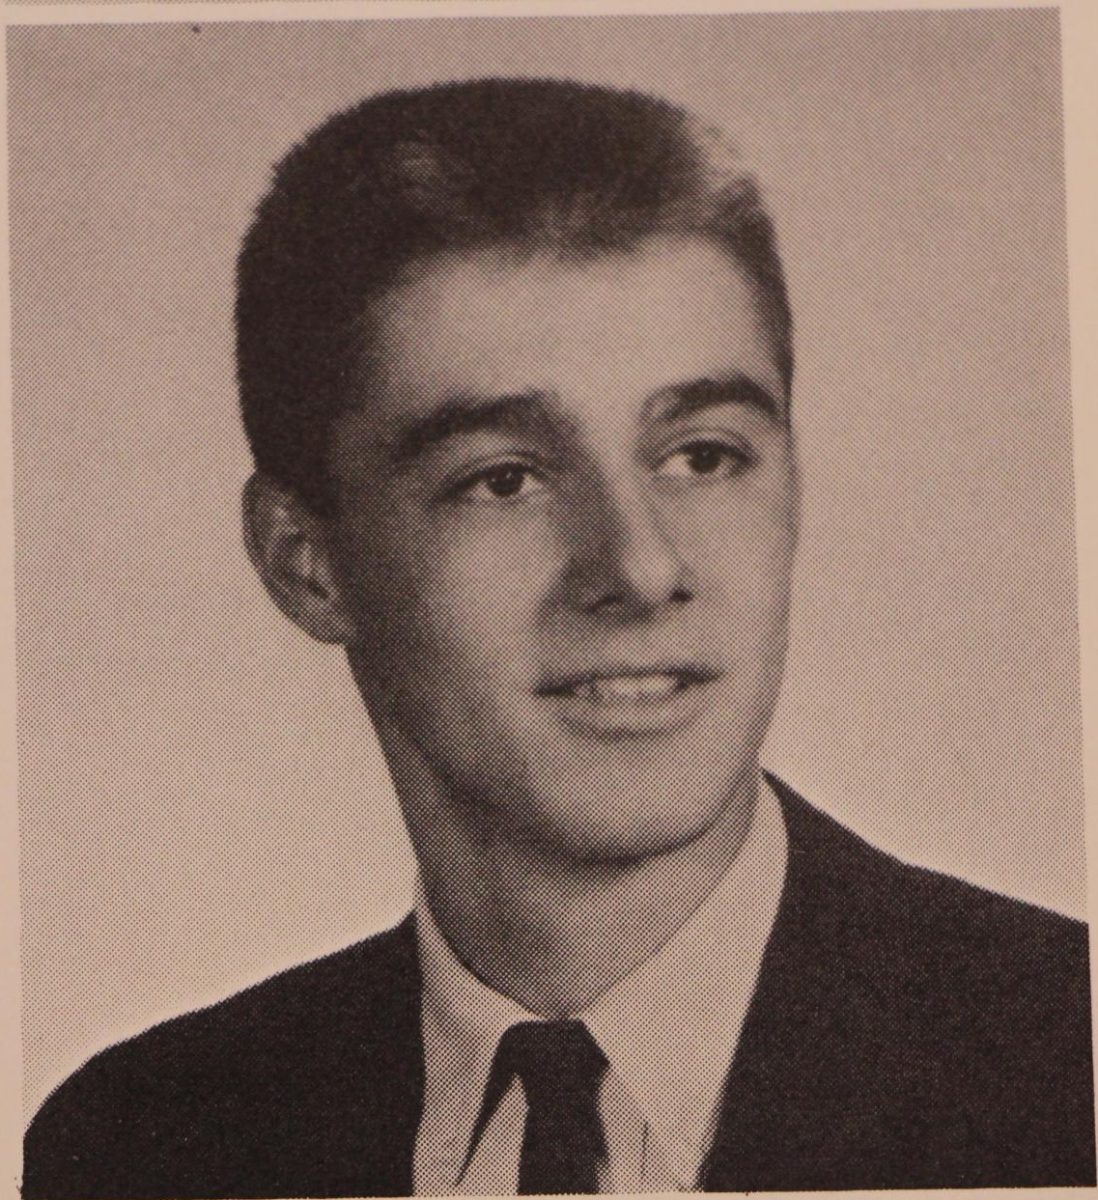 Glenn Neri in 1963